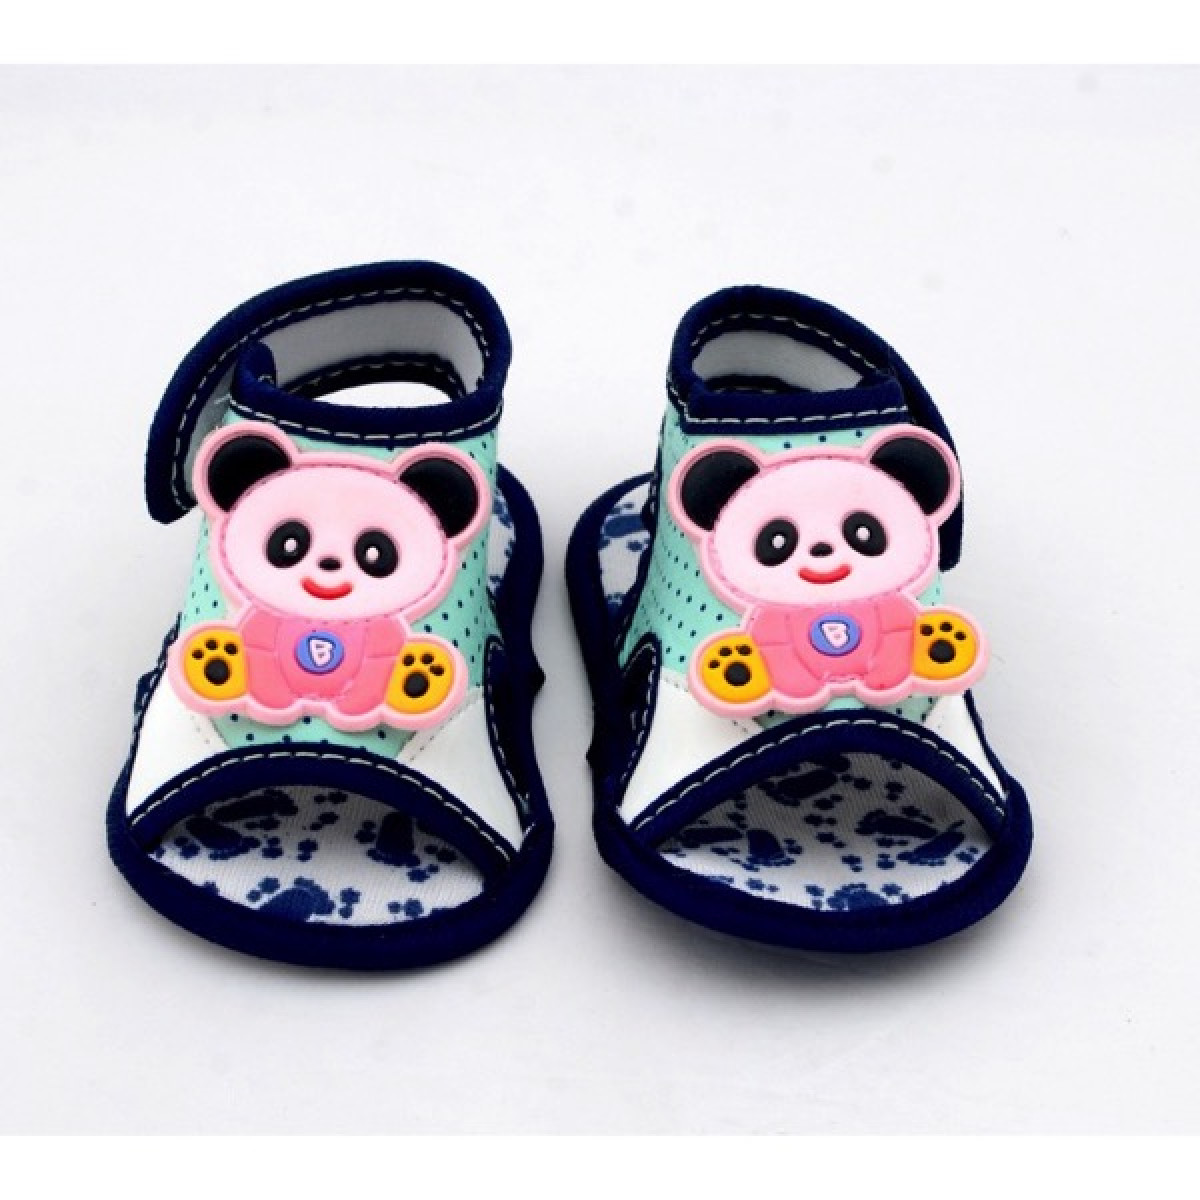 Buy Green Heeled Sandals for Women by Sneak-a-Peek Online | Ajio.com